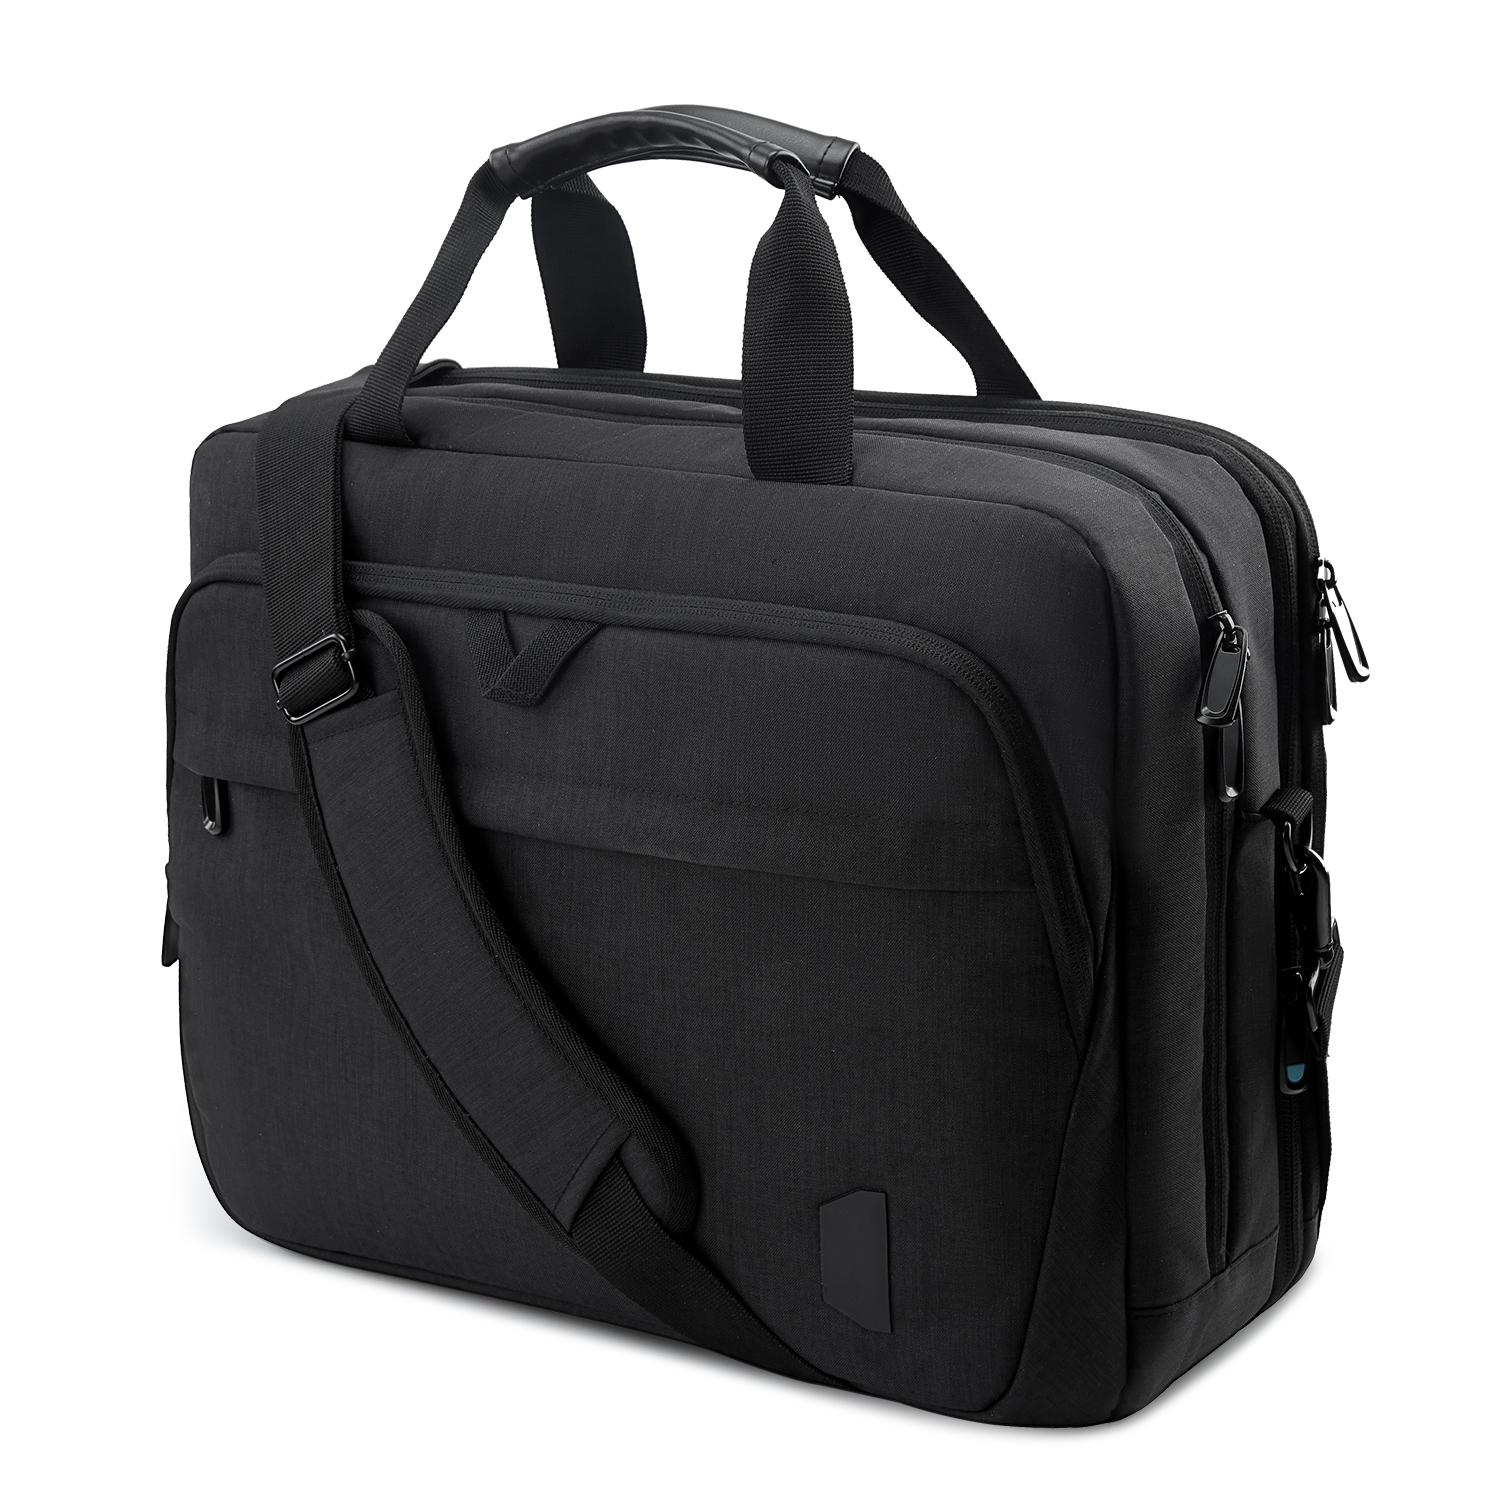 18 इंच लैपटॉप बैग विस्तार योग्य ब्रीफ़केस कंप्यूटर बैग